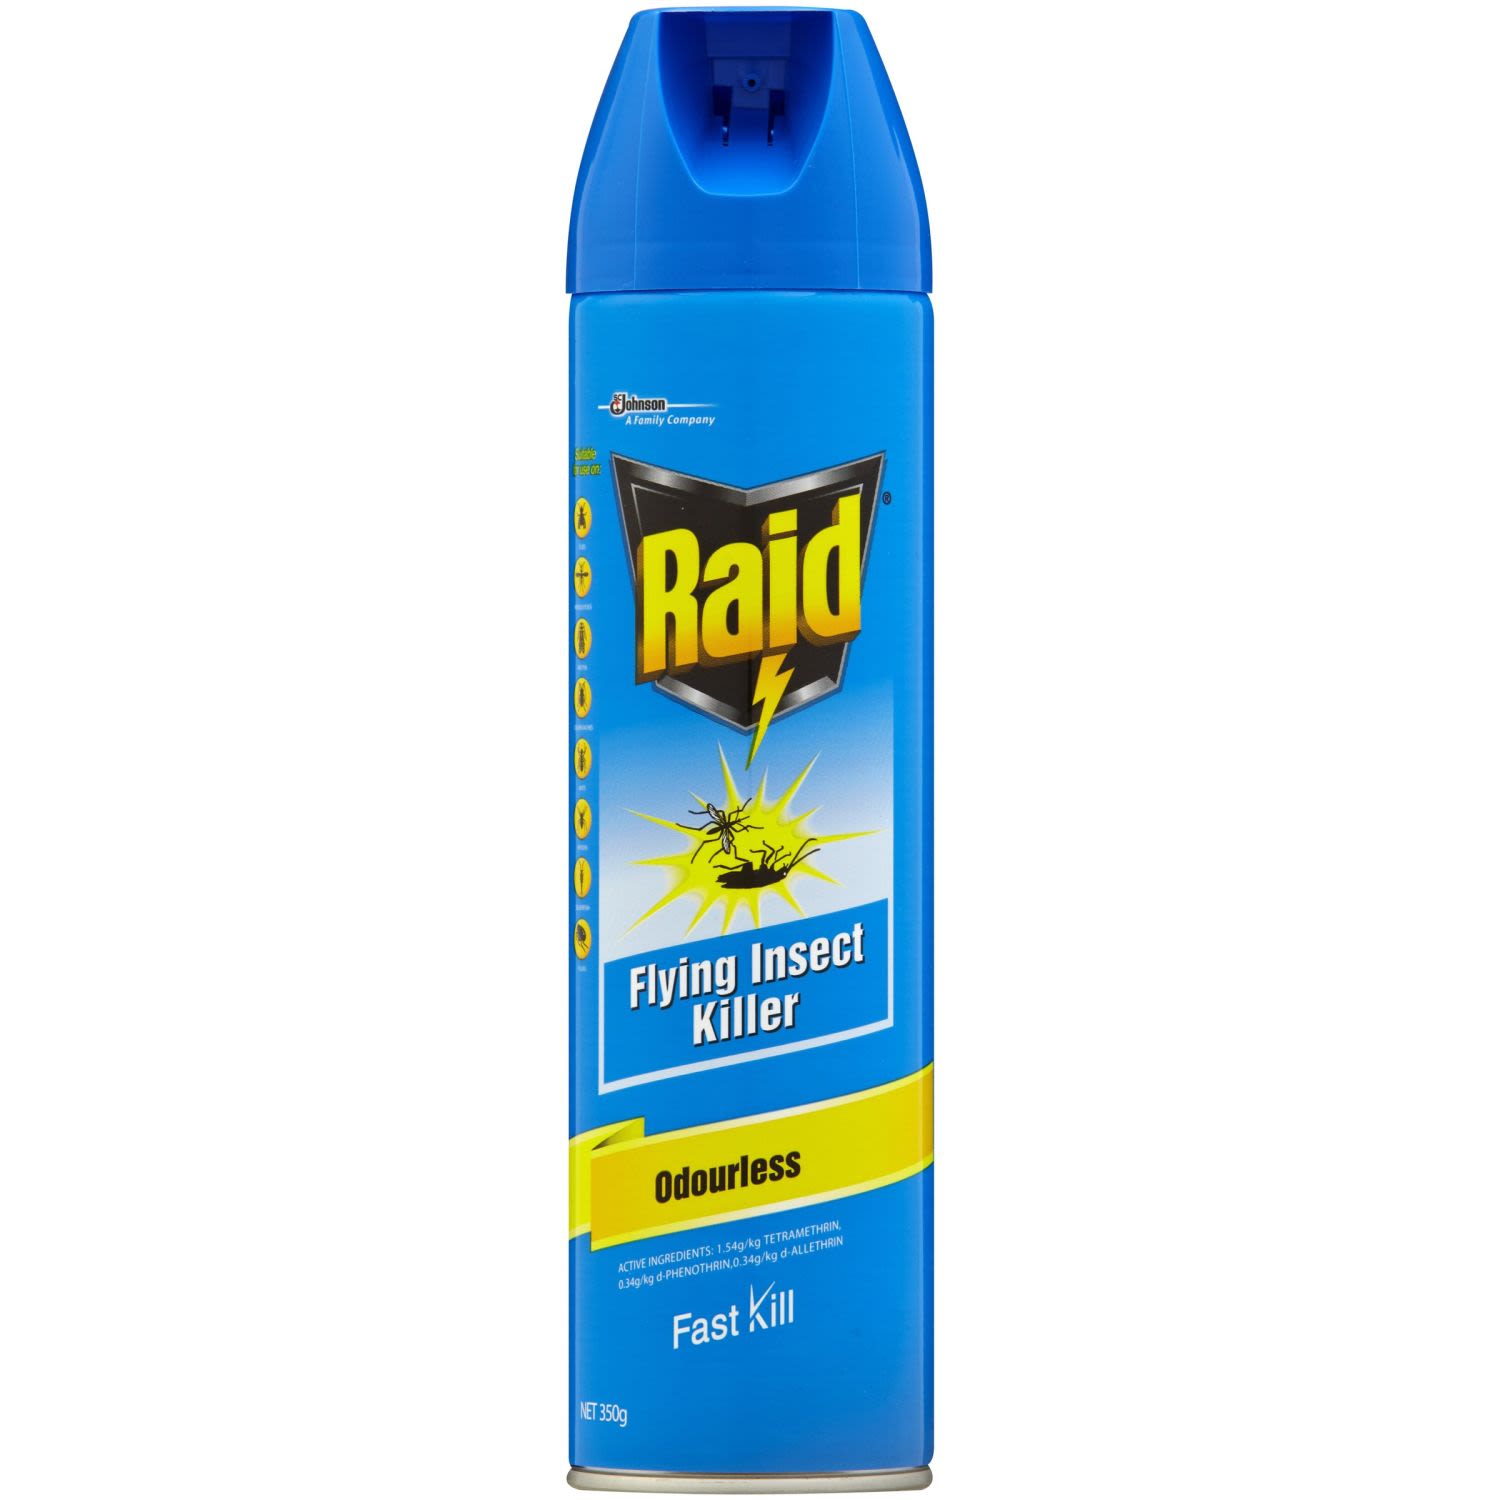 Raid Odourless Flying Insect Killer Aerosol, 350 Gram